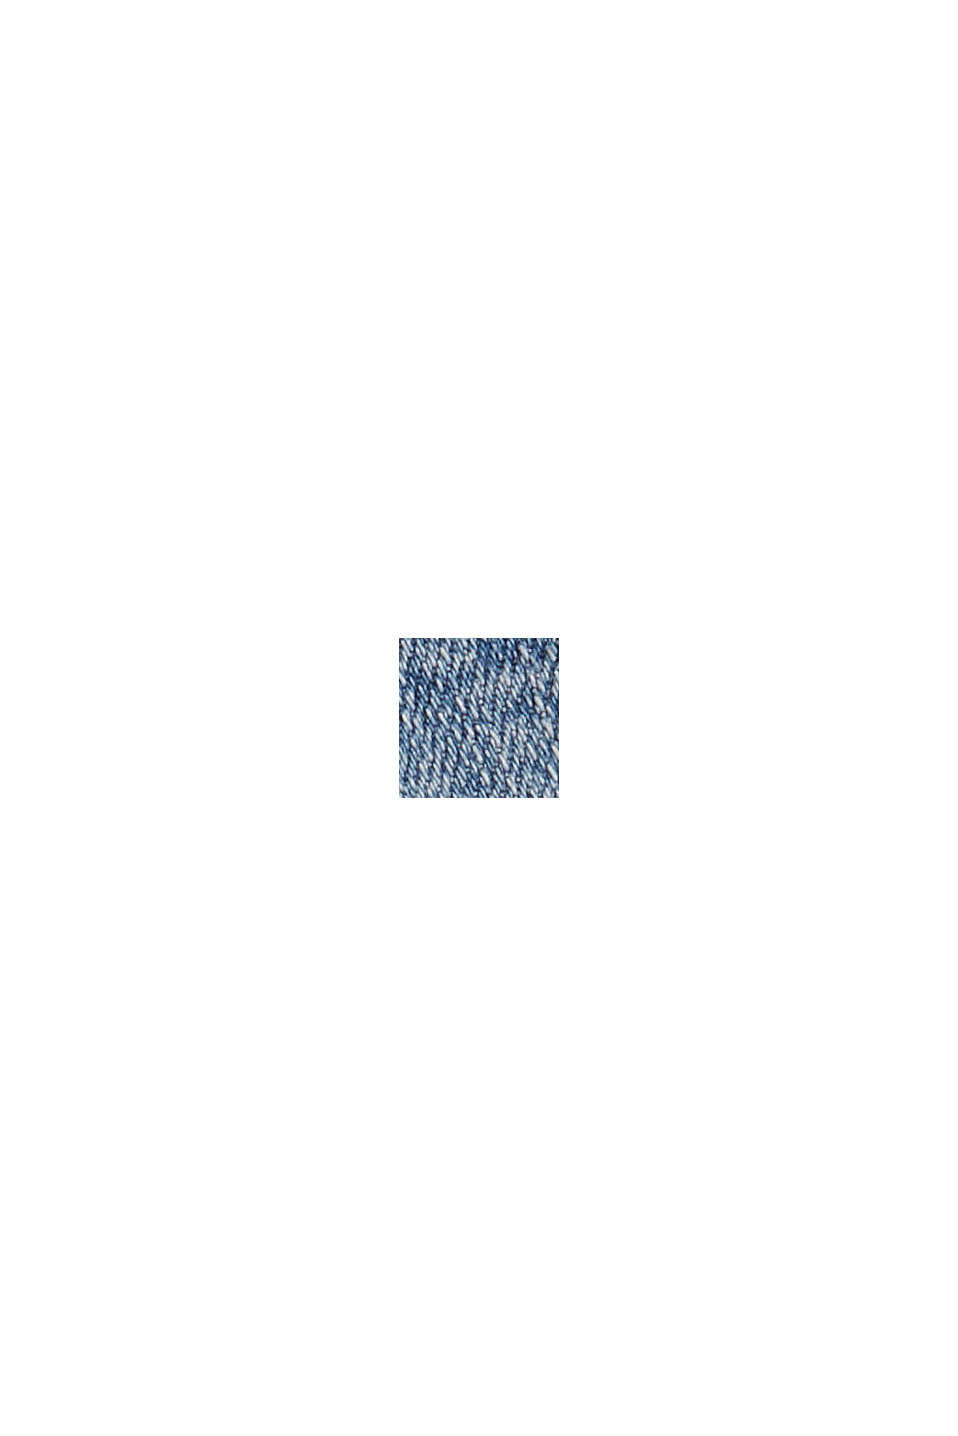 Jean à bouton décoratif, coton biologique mélangé, BLUE MEDIUM WASHED, swatch